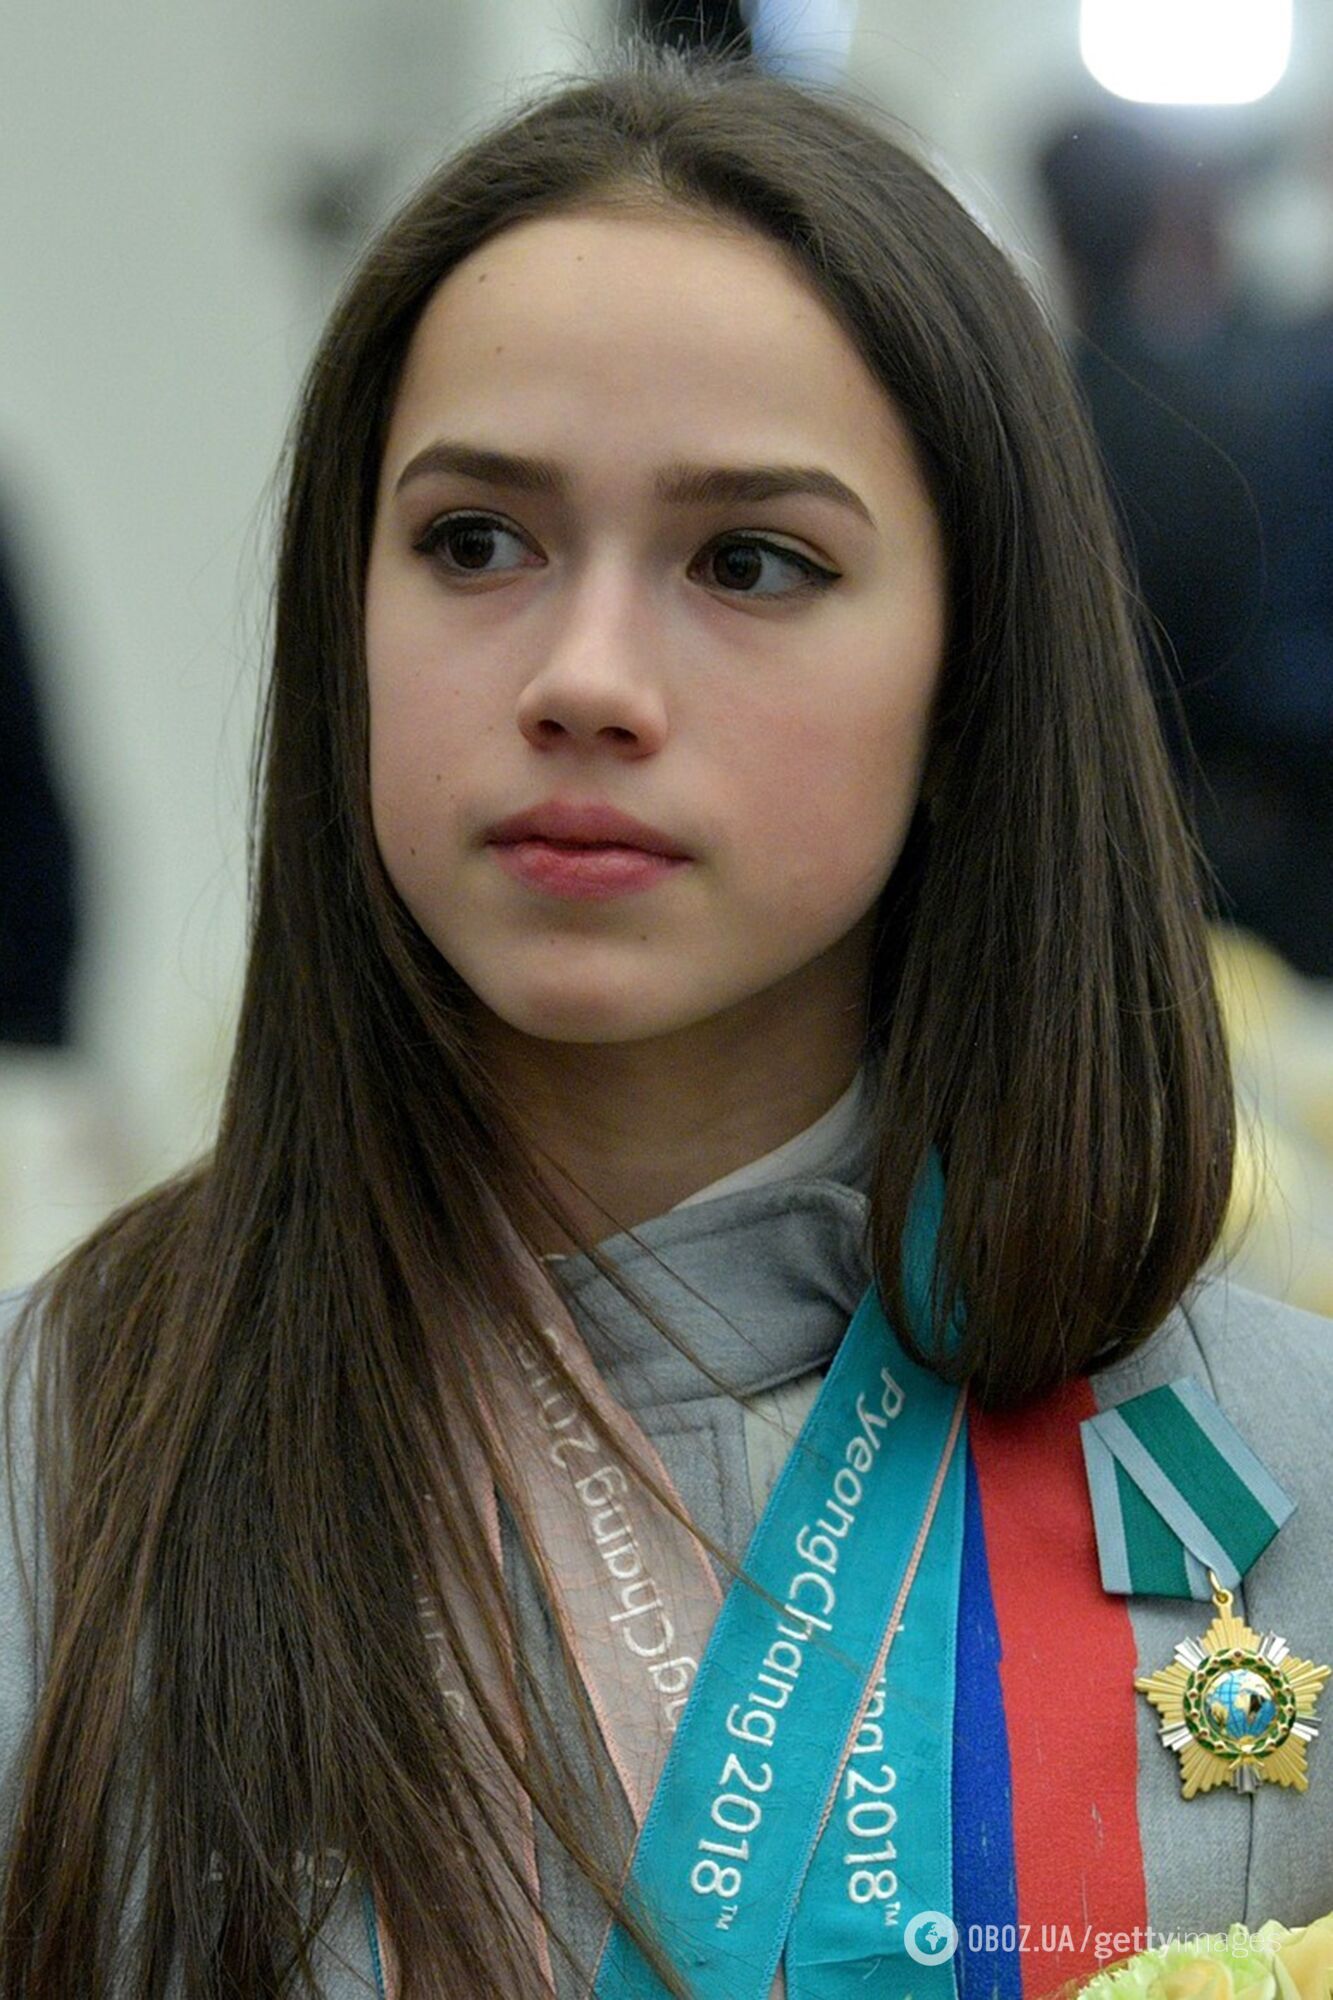 Олимпийская чемпионка из России прилетела в Крым, подписав "Наша Родина"